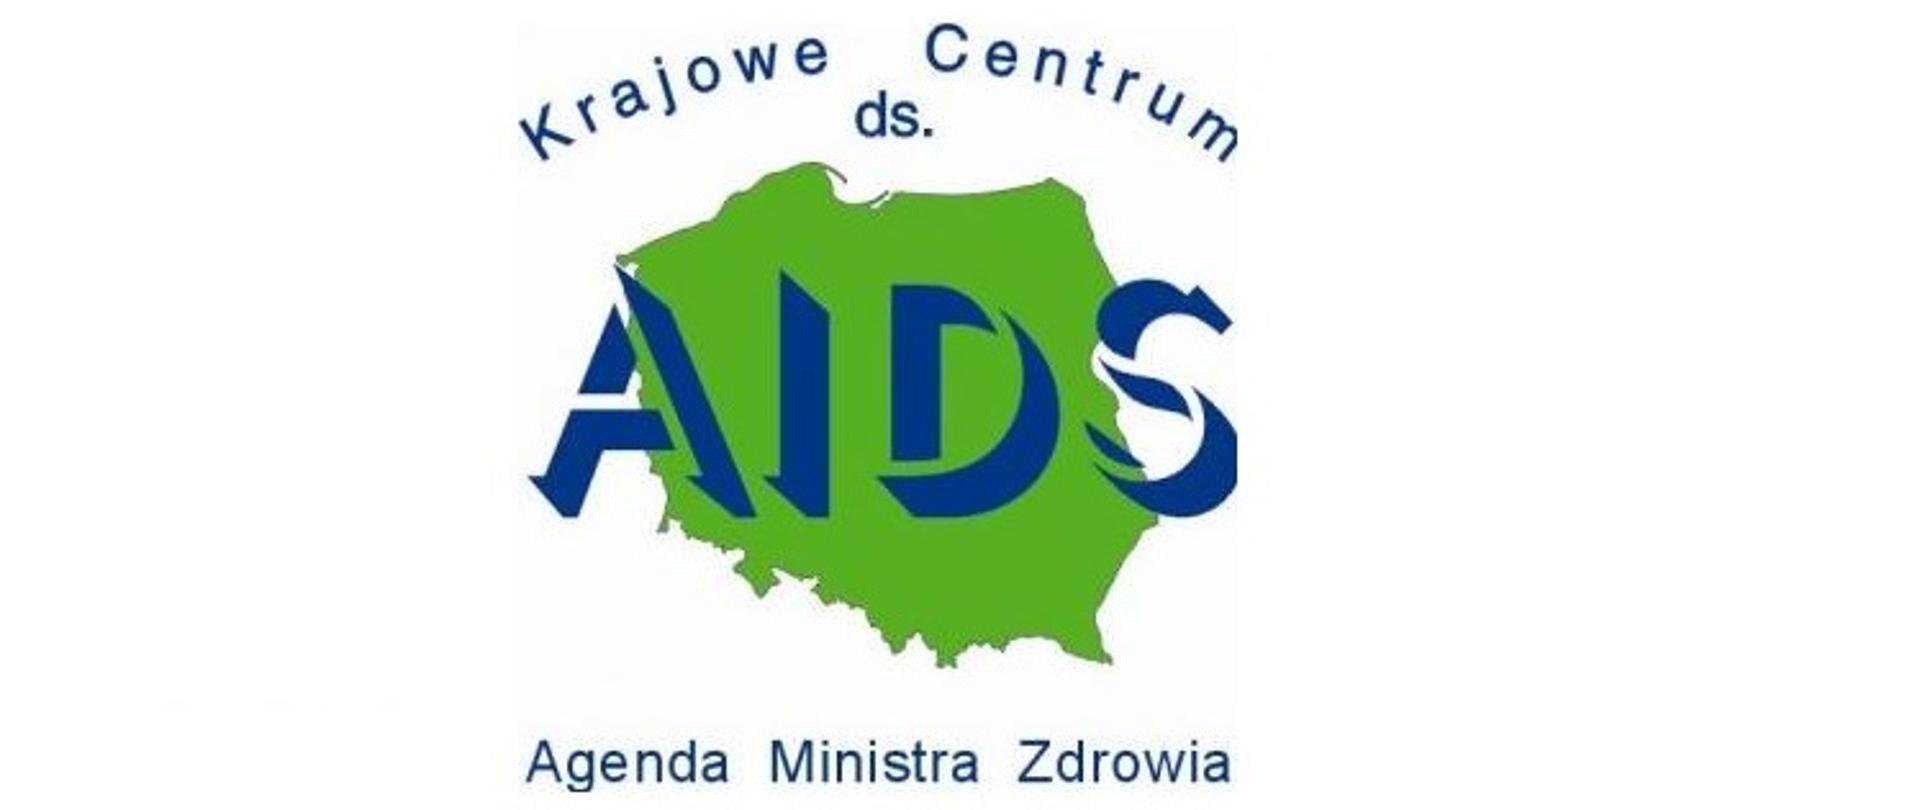 Grafika przedstawia logo Krajowego Centrum ds. AIDS